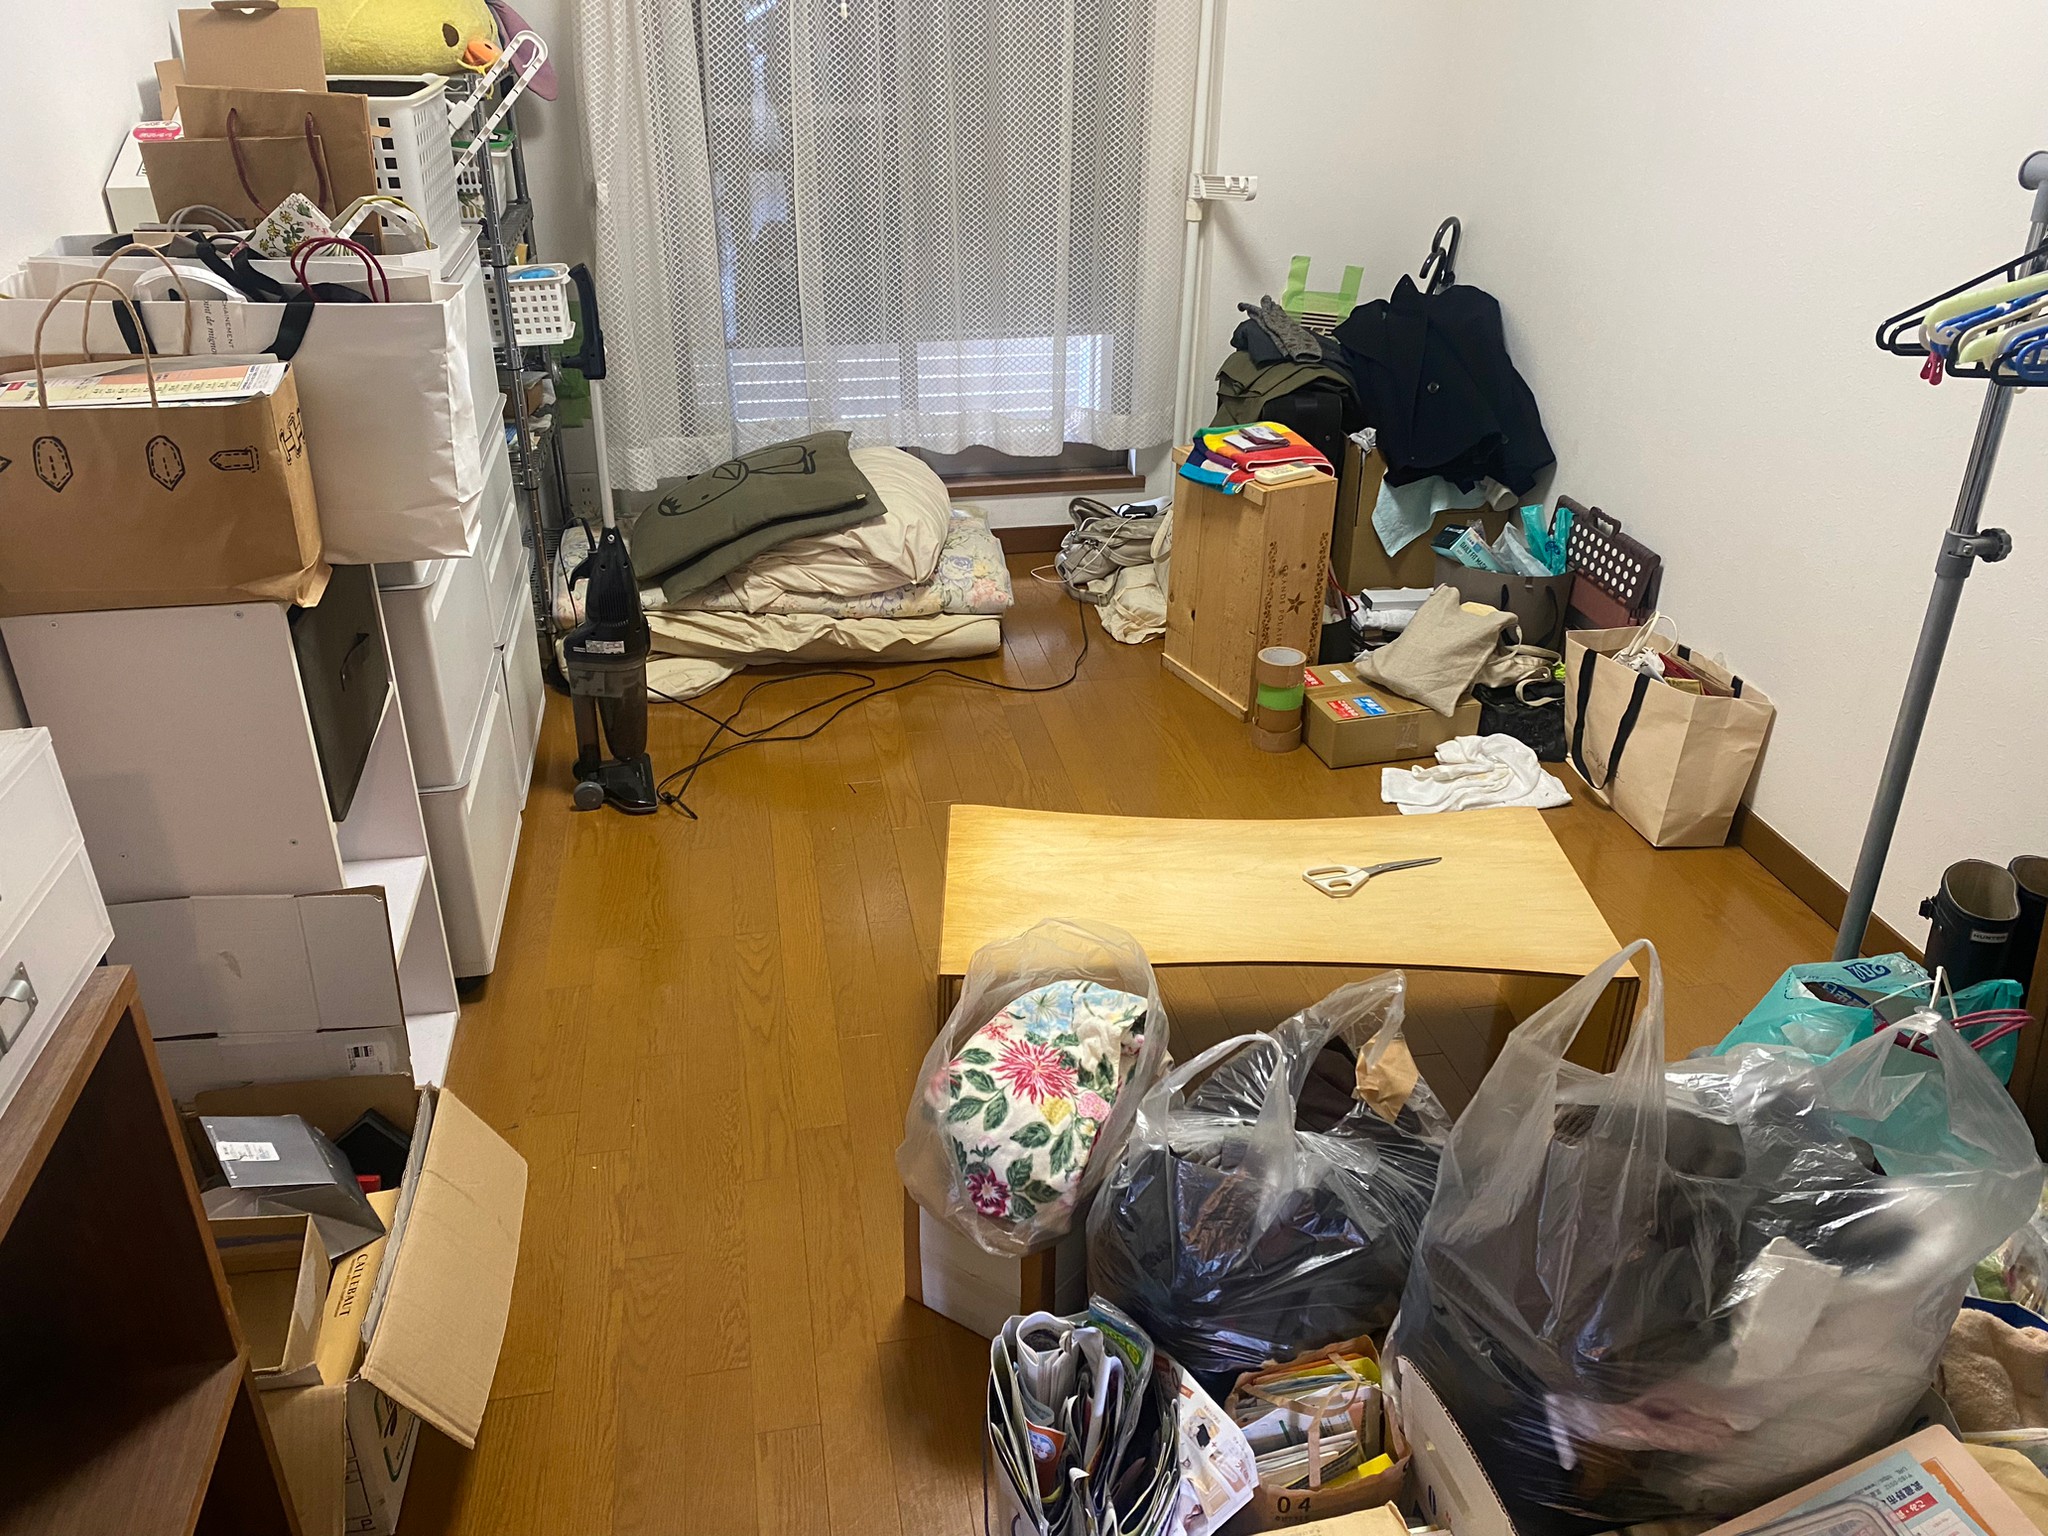 棚、掃除機、衣類、家電、その他家庭ゴミ1部屋分の回収前の状態